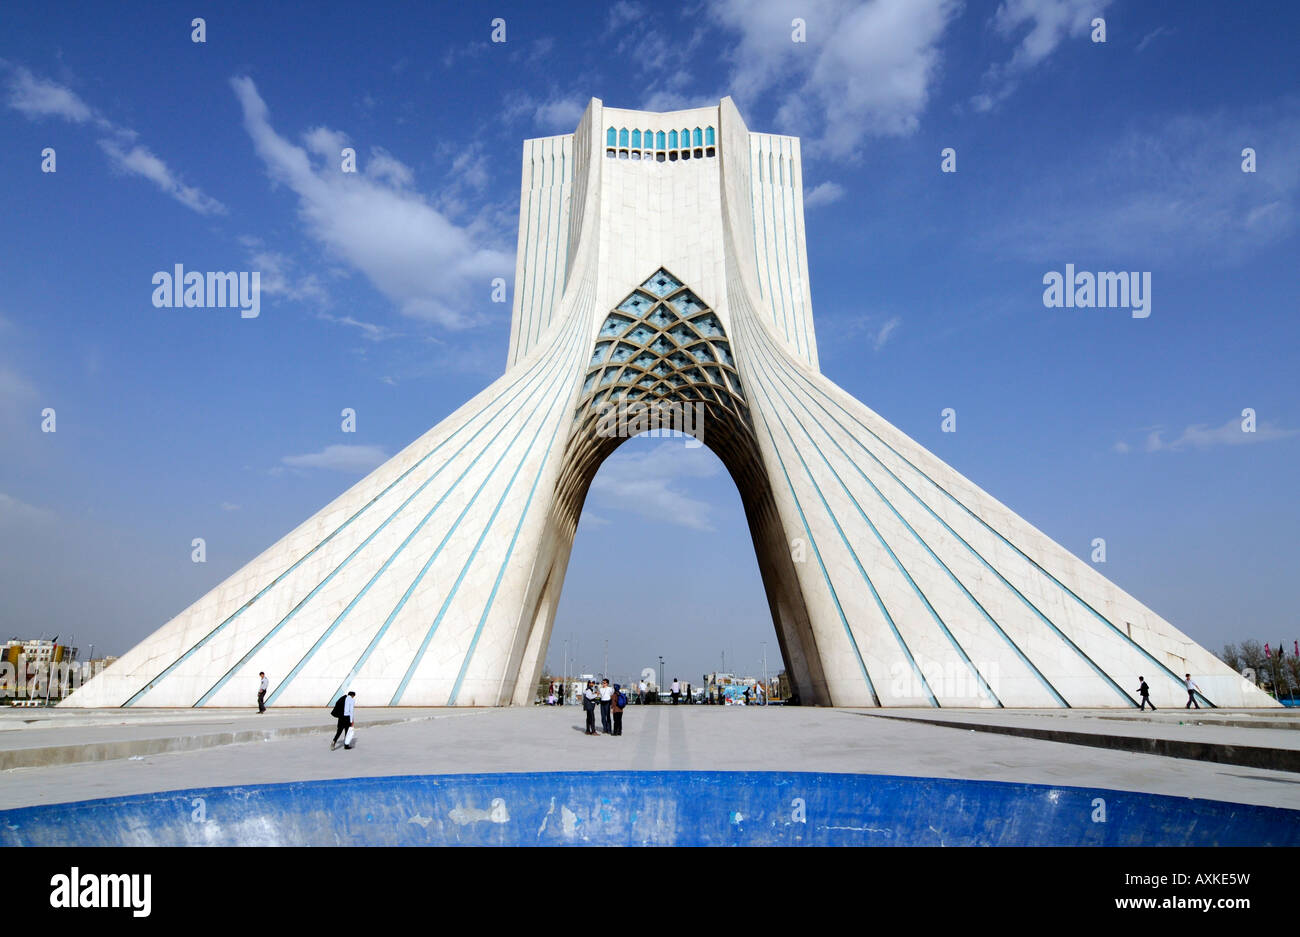 Das Azadi-Monument ist ein bedeutendes architektonisches Wahrzeichen, gebaut von der ehemaligen Schah-Regimes, befindet sich im westlichen Teheran, Iran Stockfoto